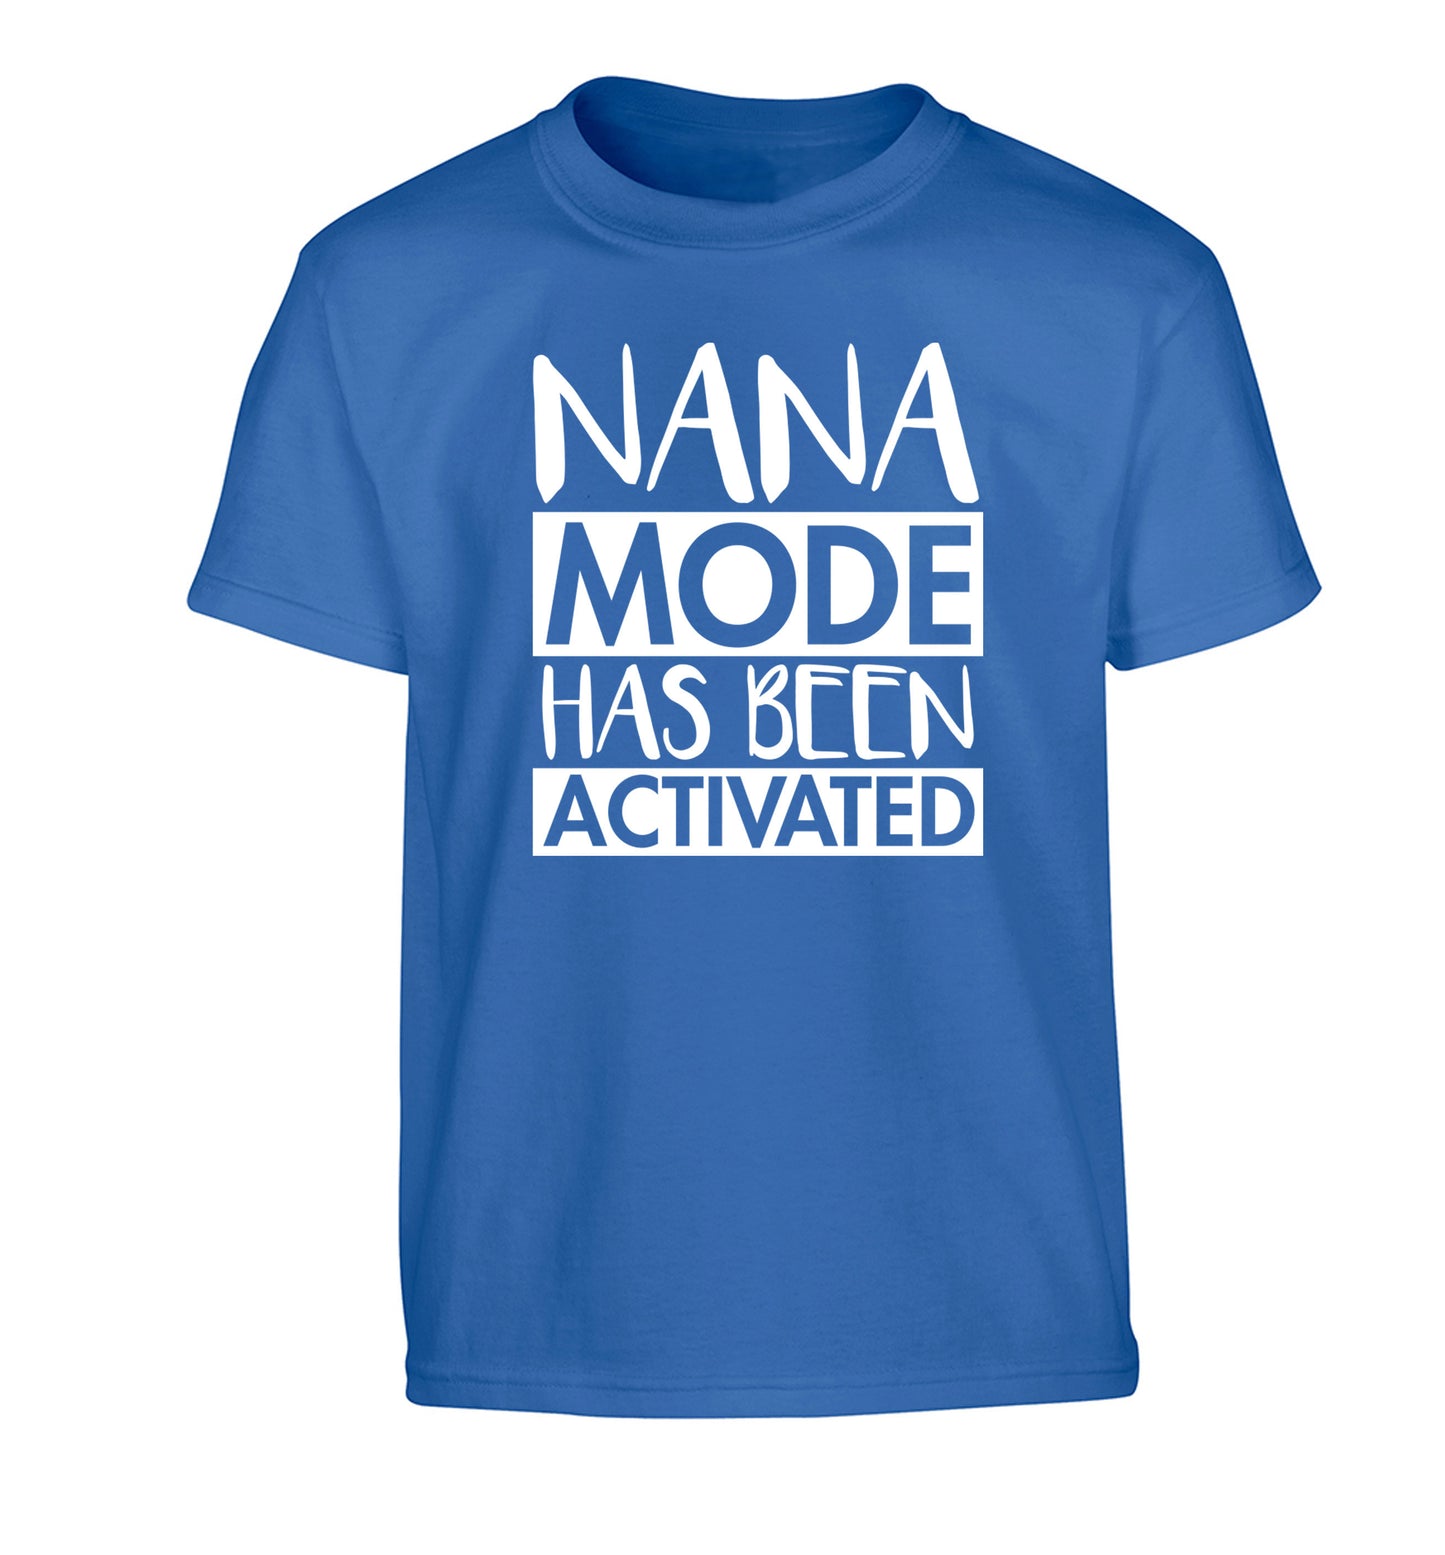 Nana mode activated Children's blue Tshirt 12-14 Years